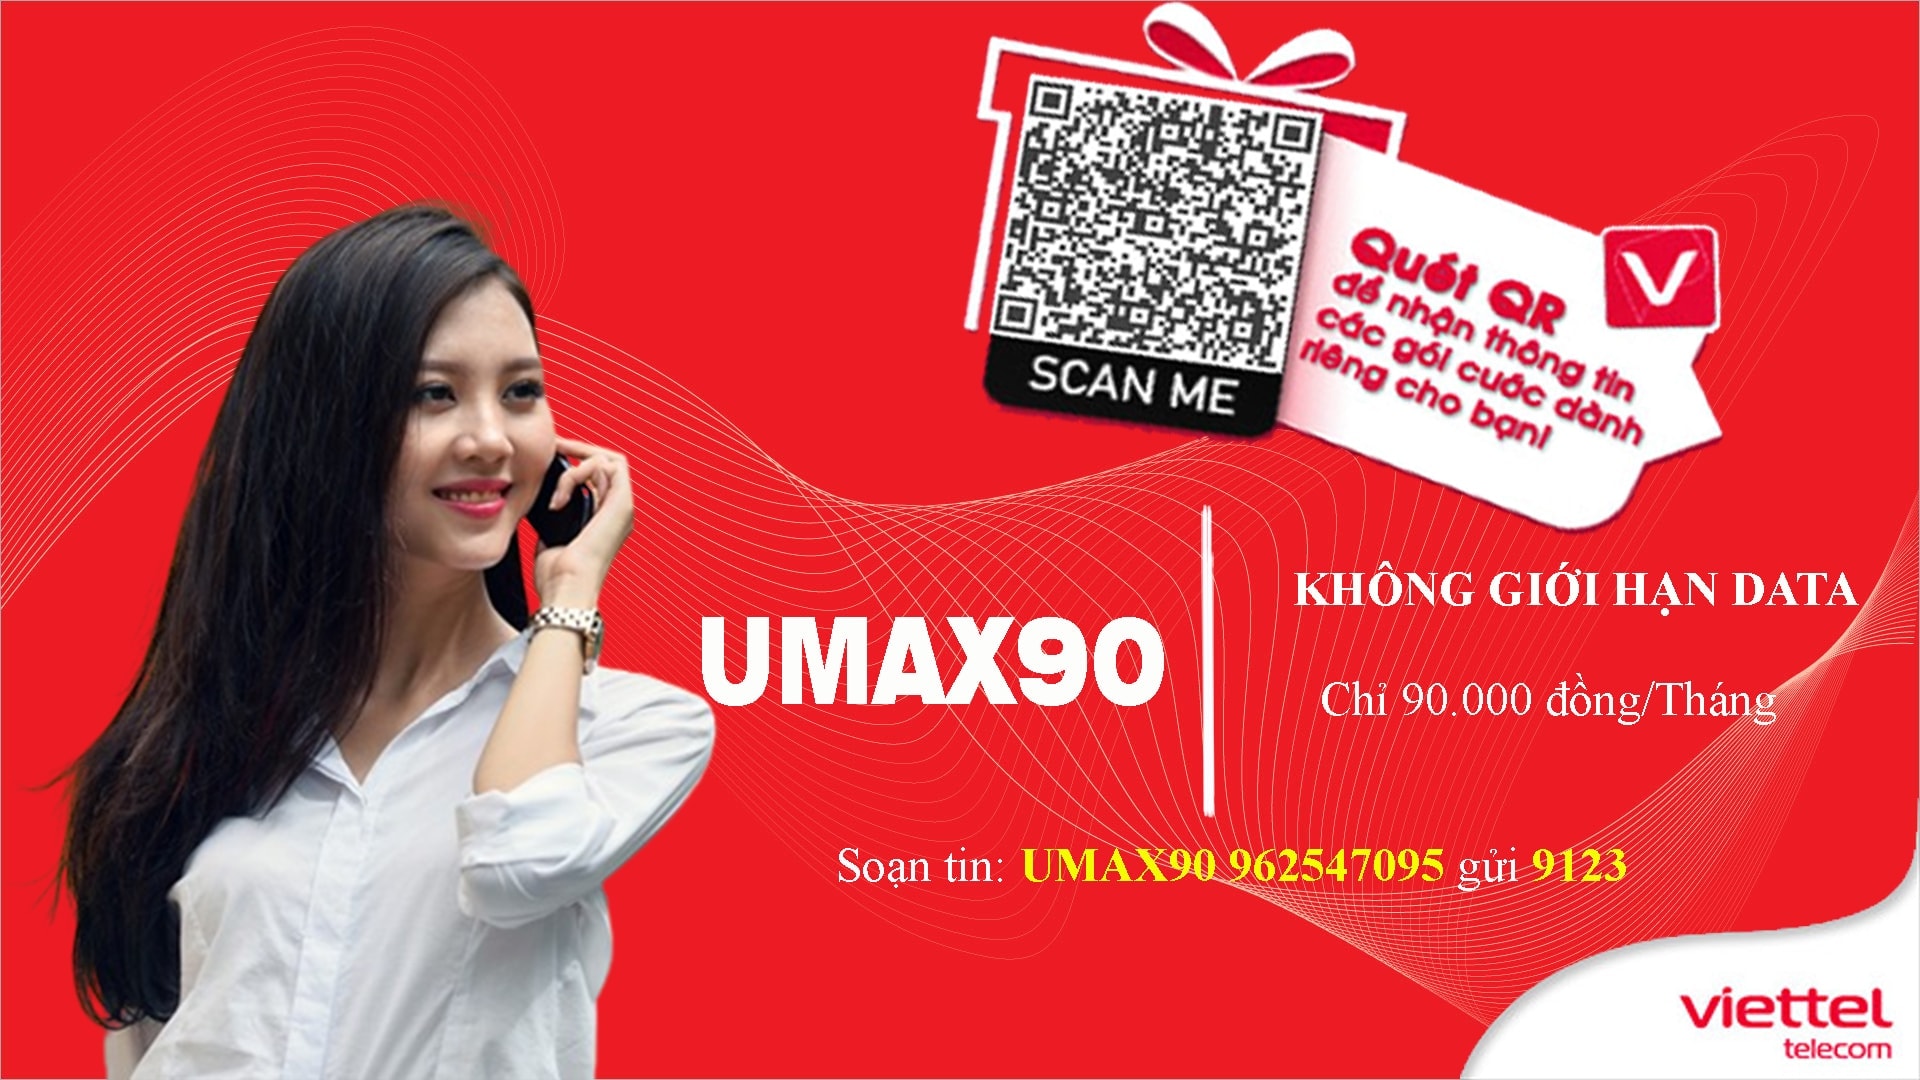 Đăng ký gói cước Umax90 Viettel online